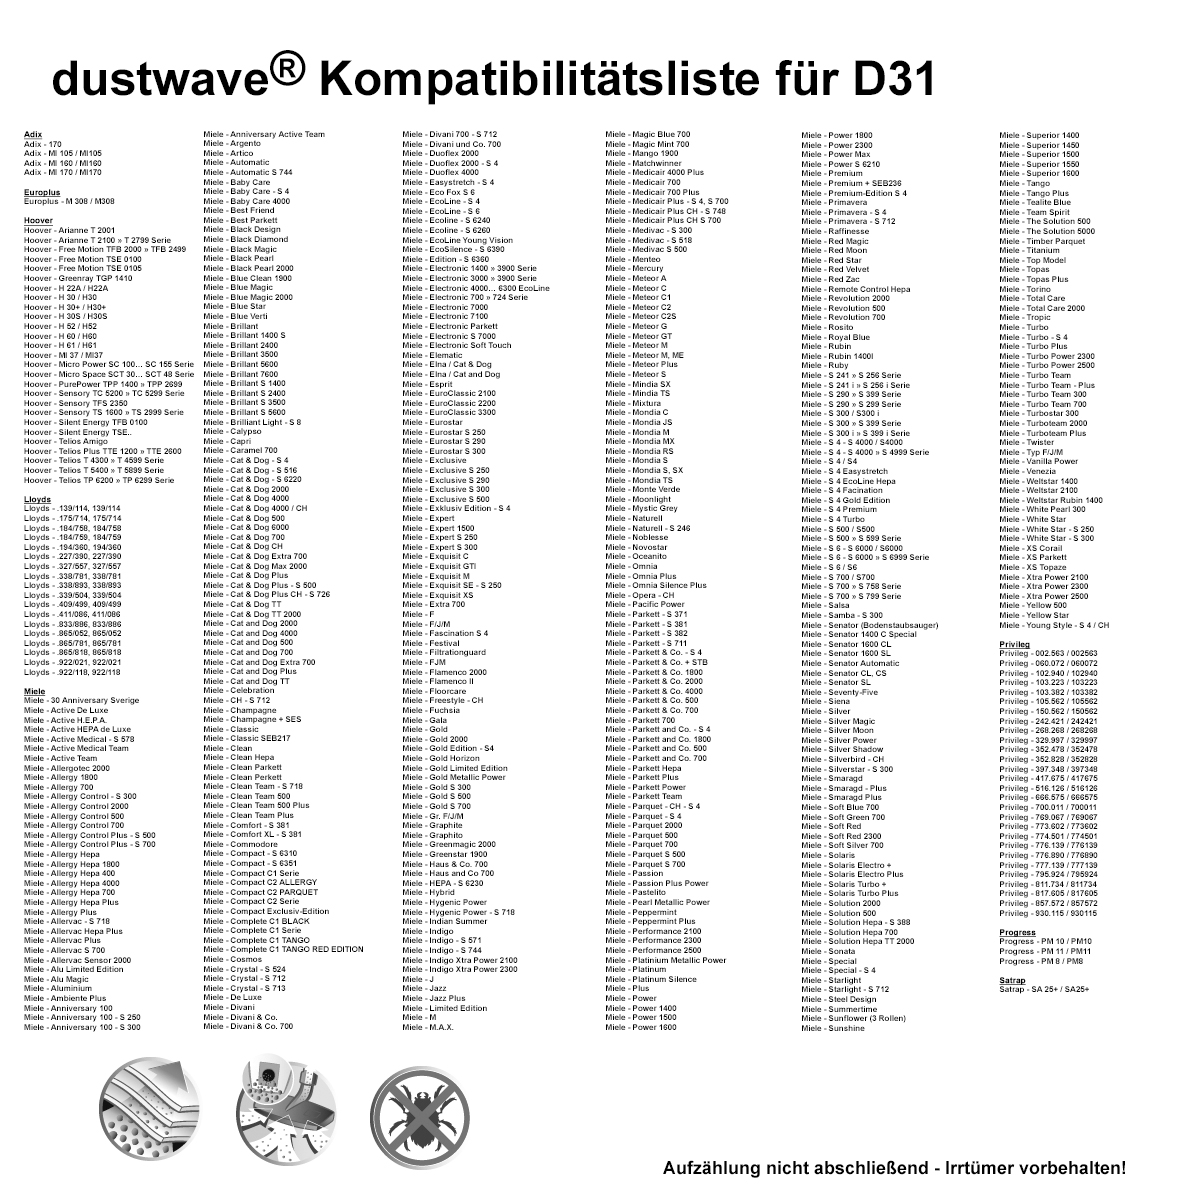 Dustwave® 5 Staubsaugerbeutel für Miele S6510 / S 6510 S6 - hocheffizient, mehrlagiges Mikrovlies mit Hygieneverschluss - Made in Germany